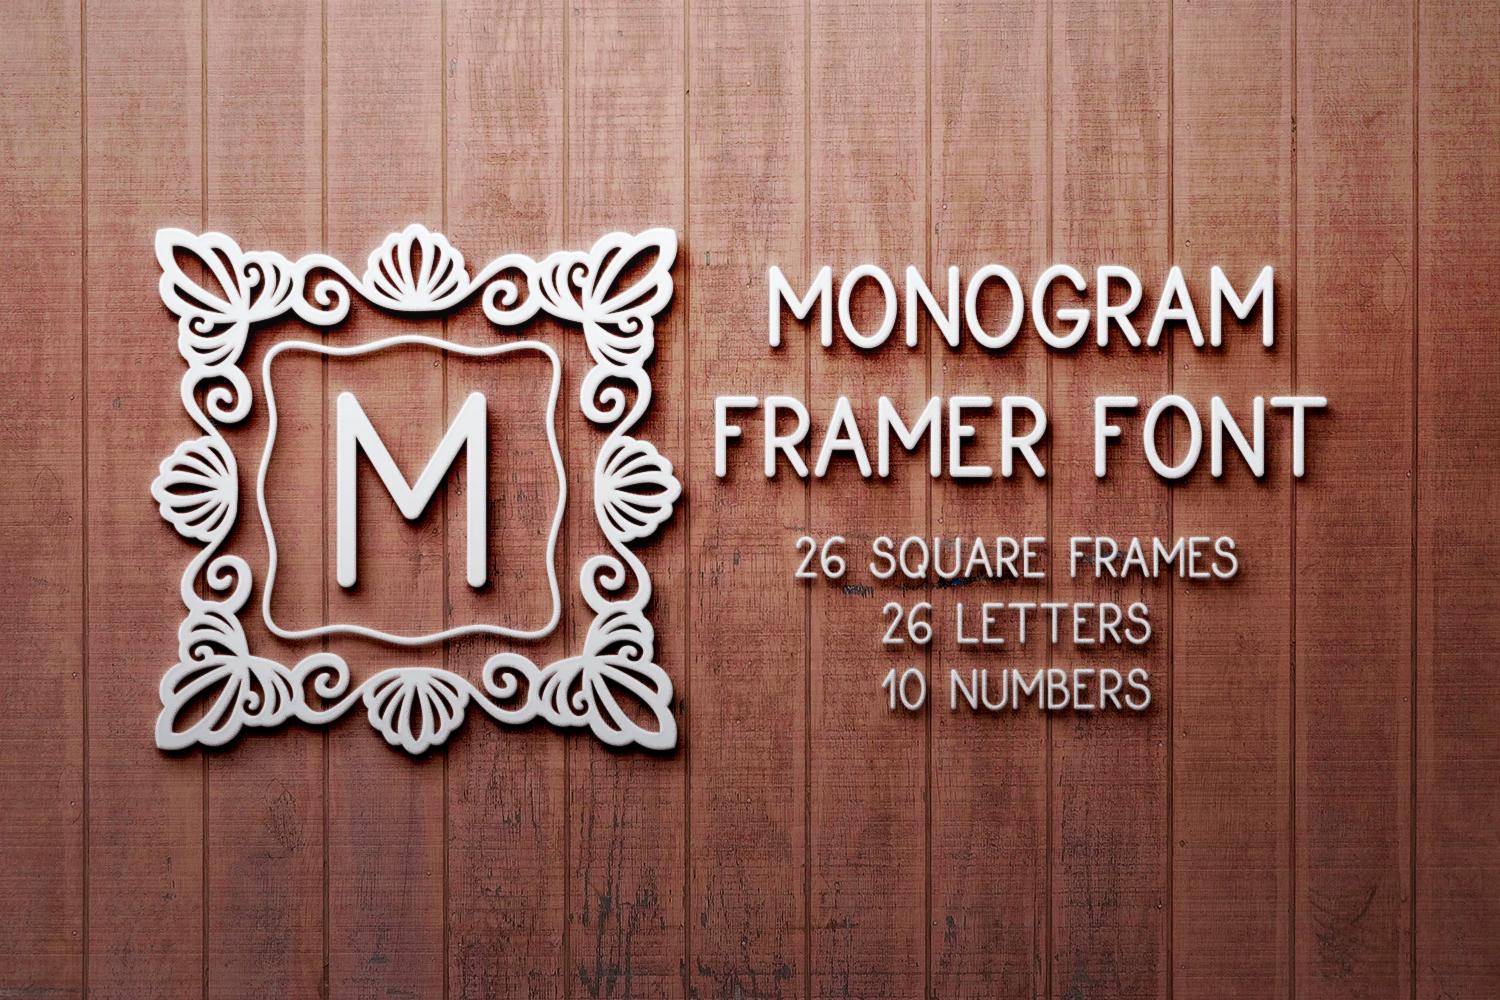 Monogram Framer Font